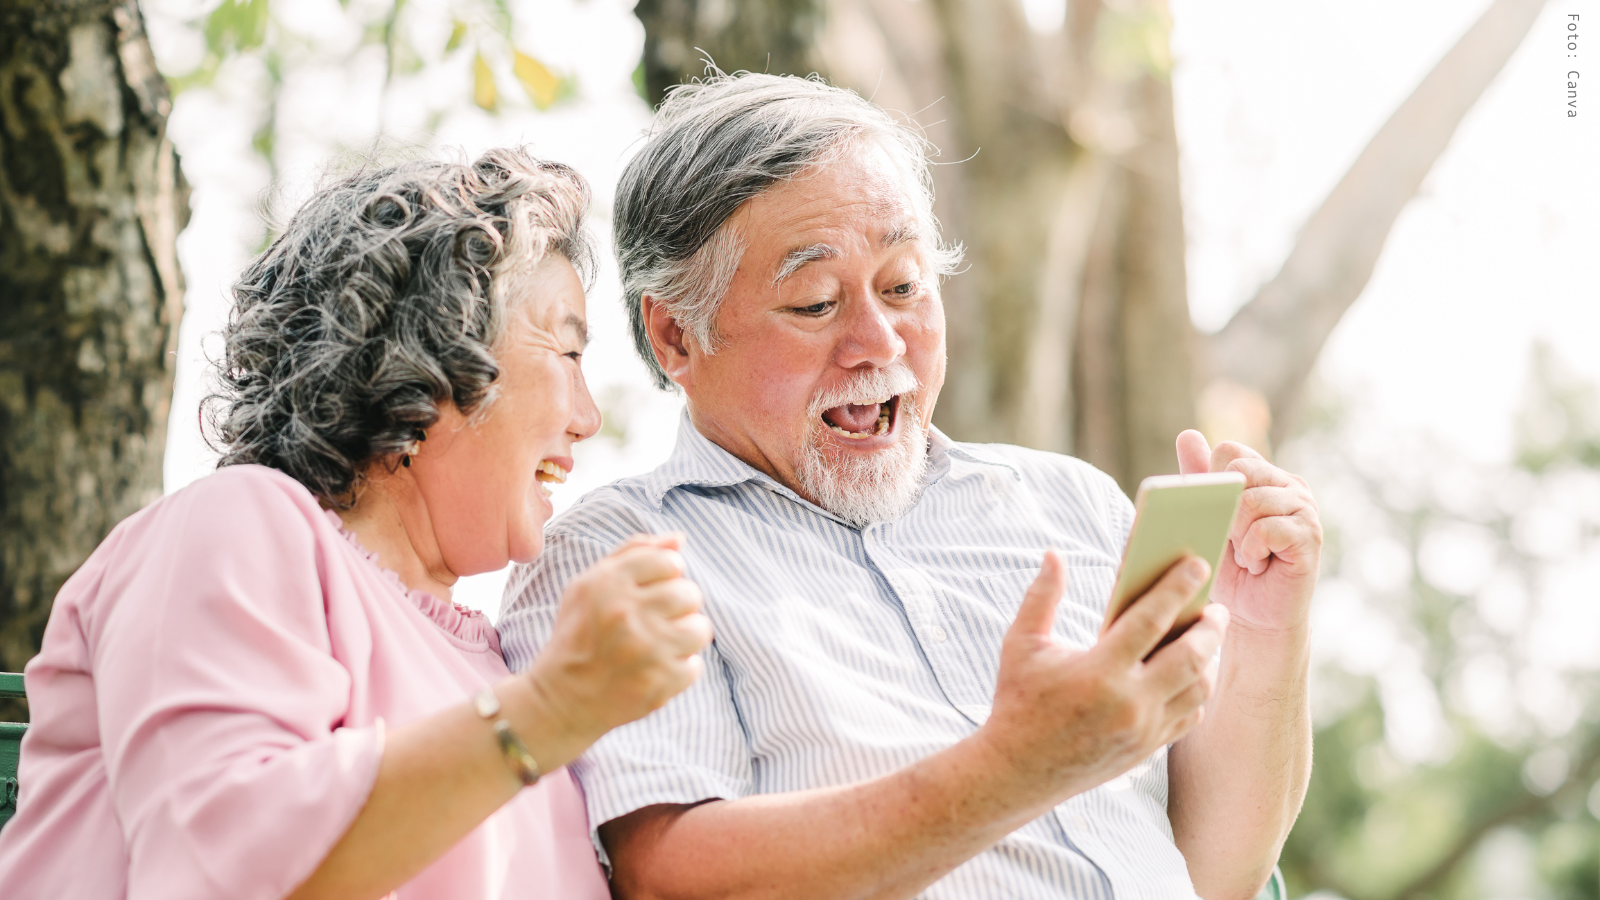 Zwei ältere Menschen sitzen im Wald auf einer Bank und blicken lachend auf ein Smartphone, das der Mann in der Hand hält.